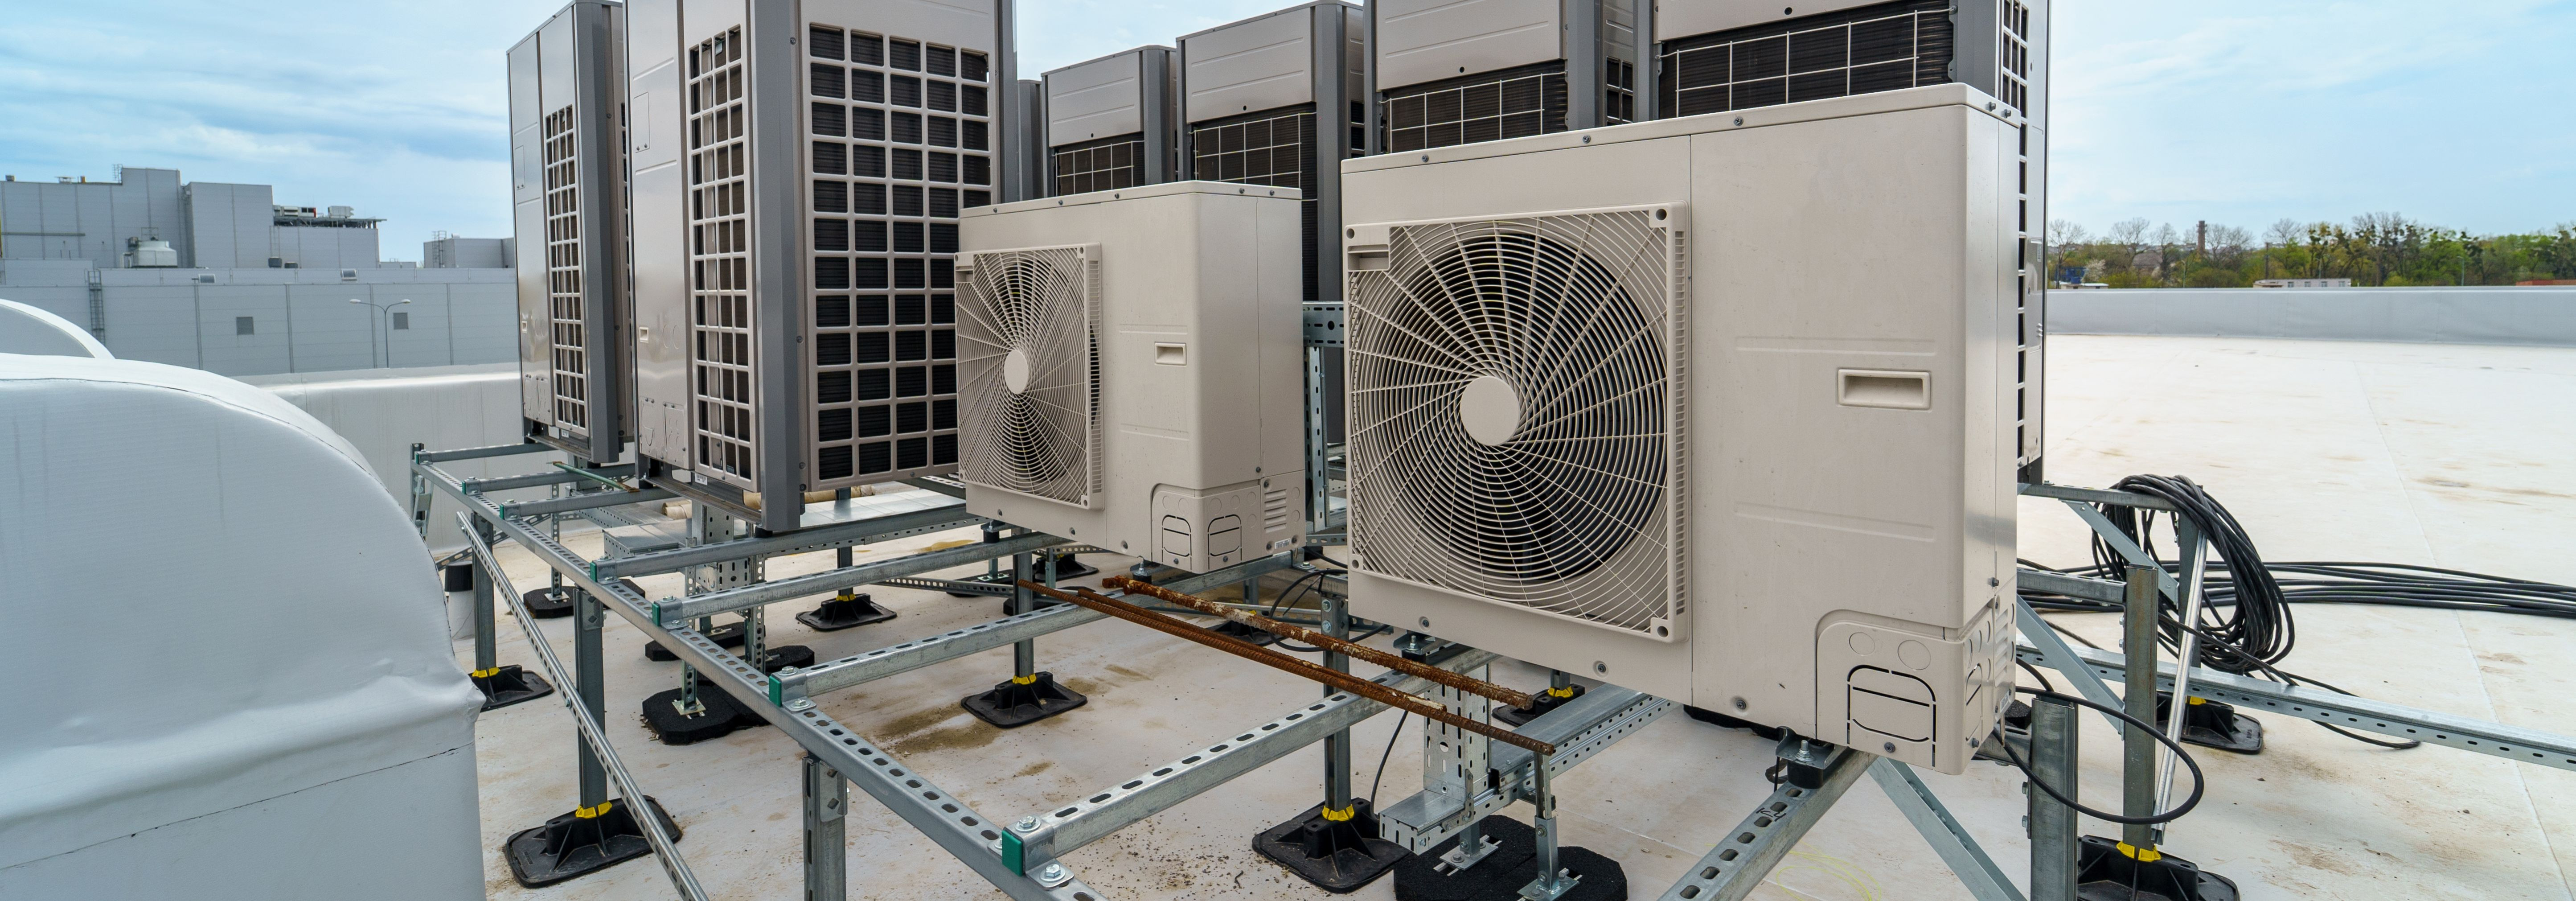 Ventilatsioonisüsteemi tõhusus mõjutab otseselt siseõhu kvaliteeti ja energiakasutust. Üks võtmetegur, mis tagab nende eesmärkide saavutamise, on korralik isola